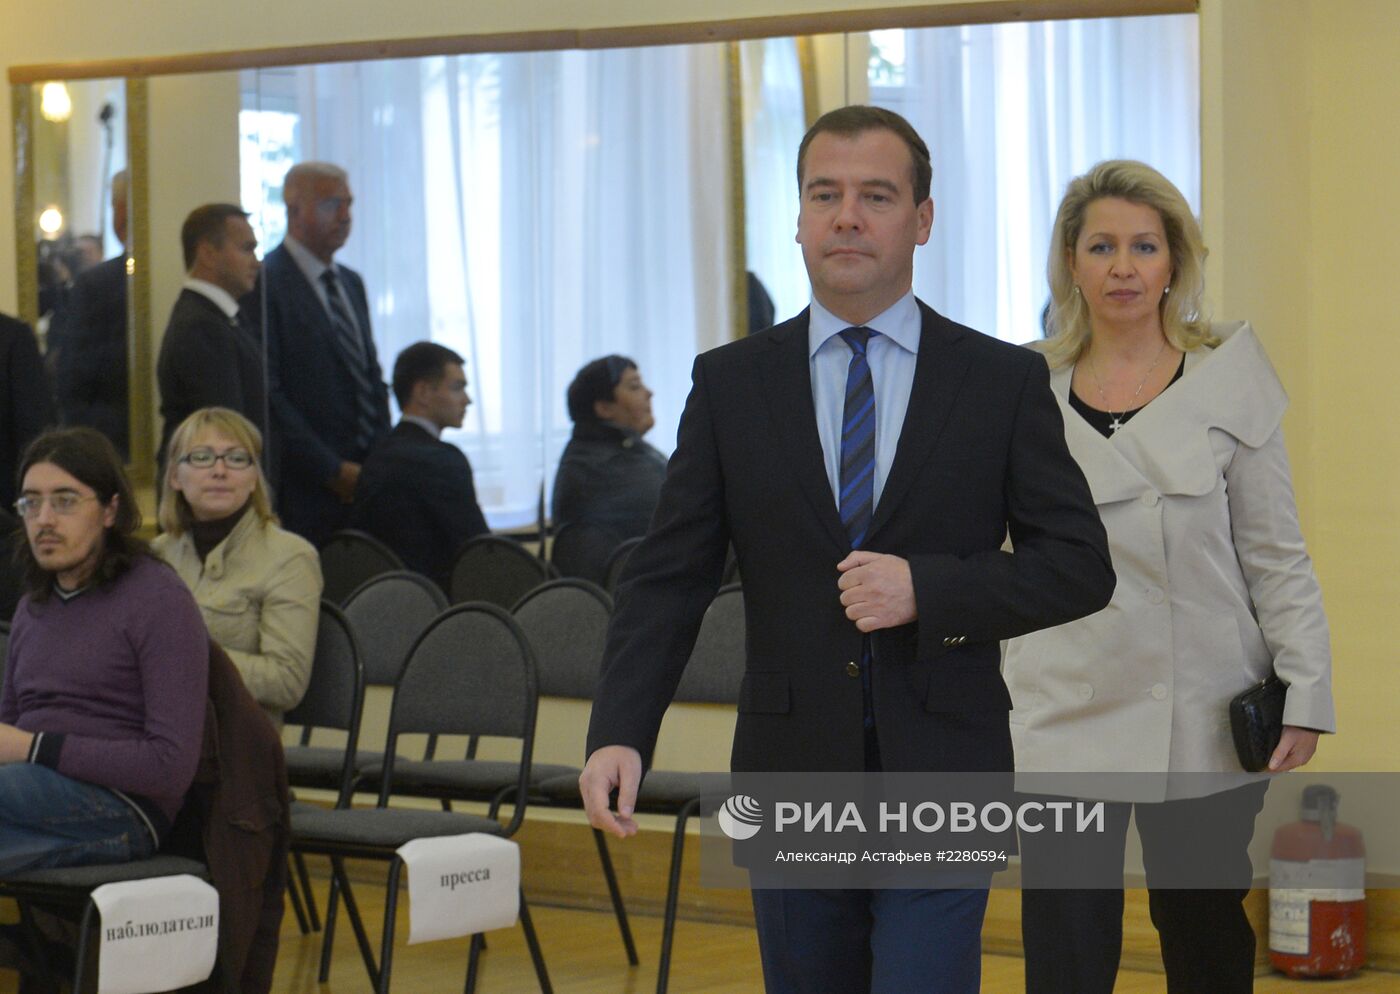 Голосование Д.Медведева на выборах мэра Москвы